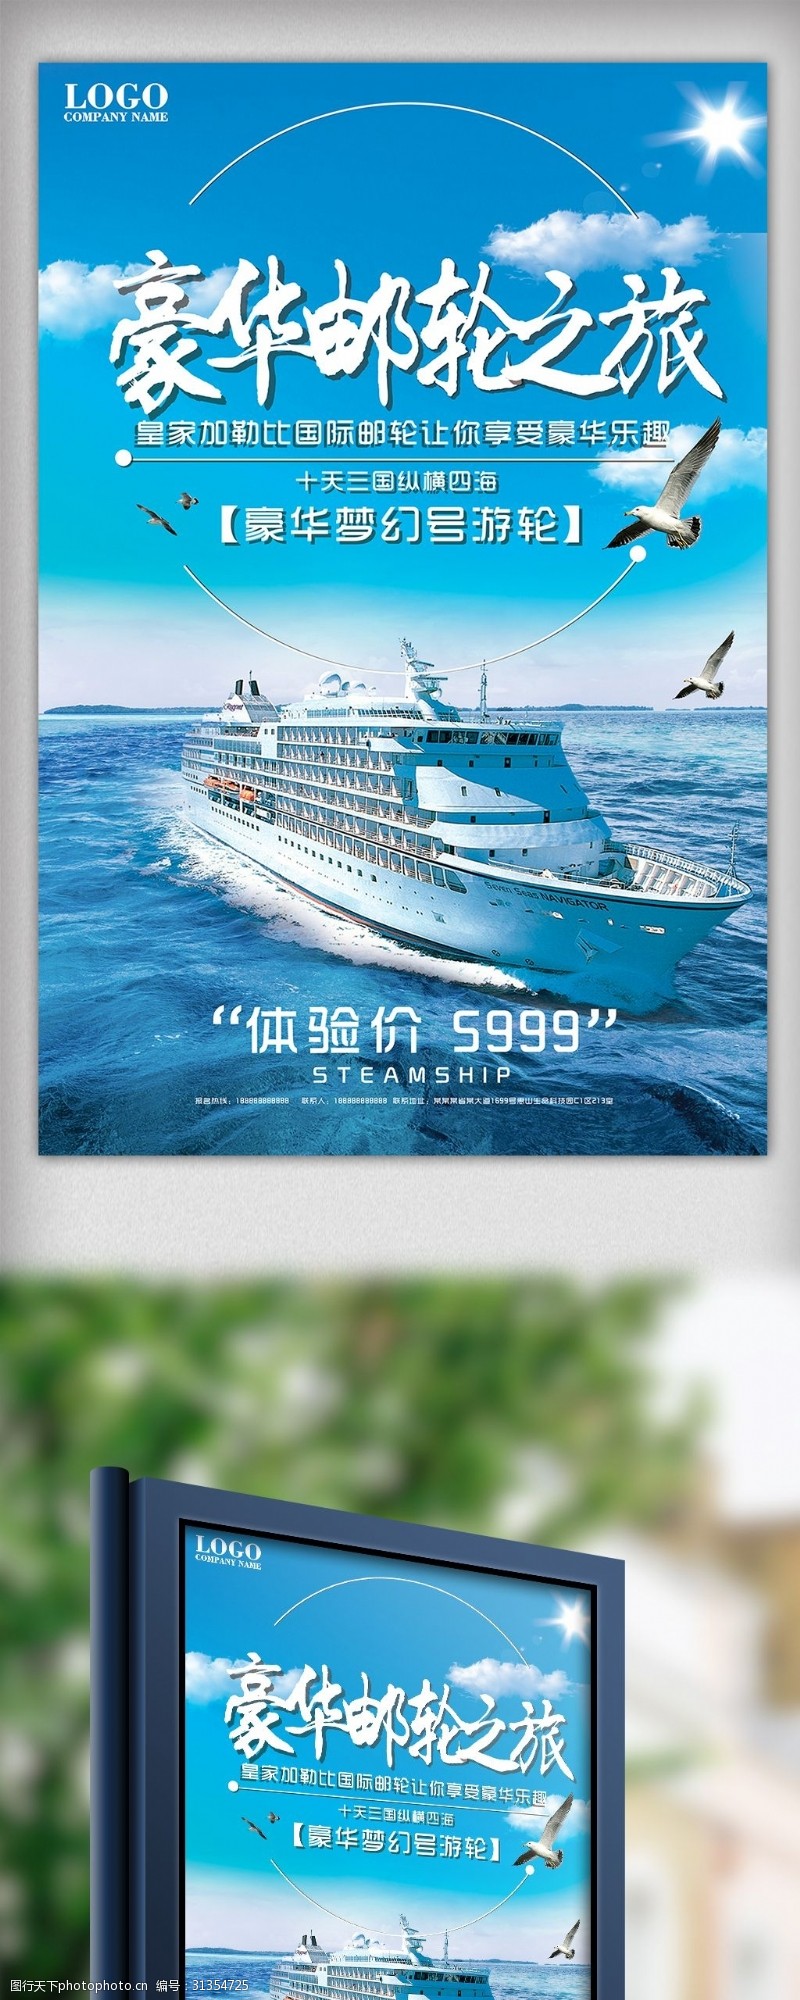 加勒比海报蓝色大气创意豪华游轮旅行海报设计